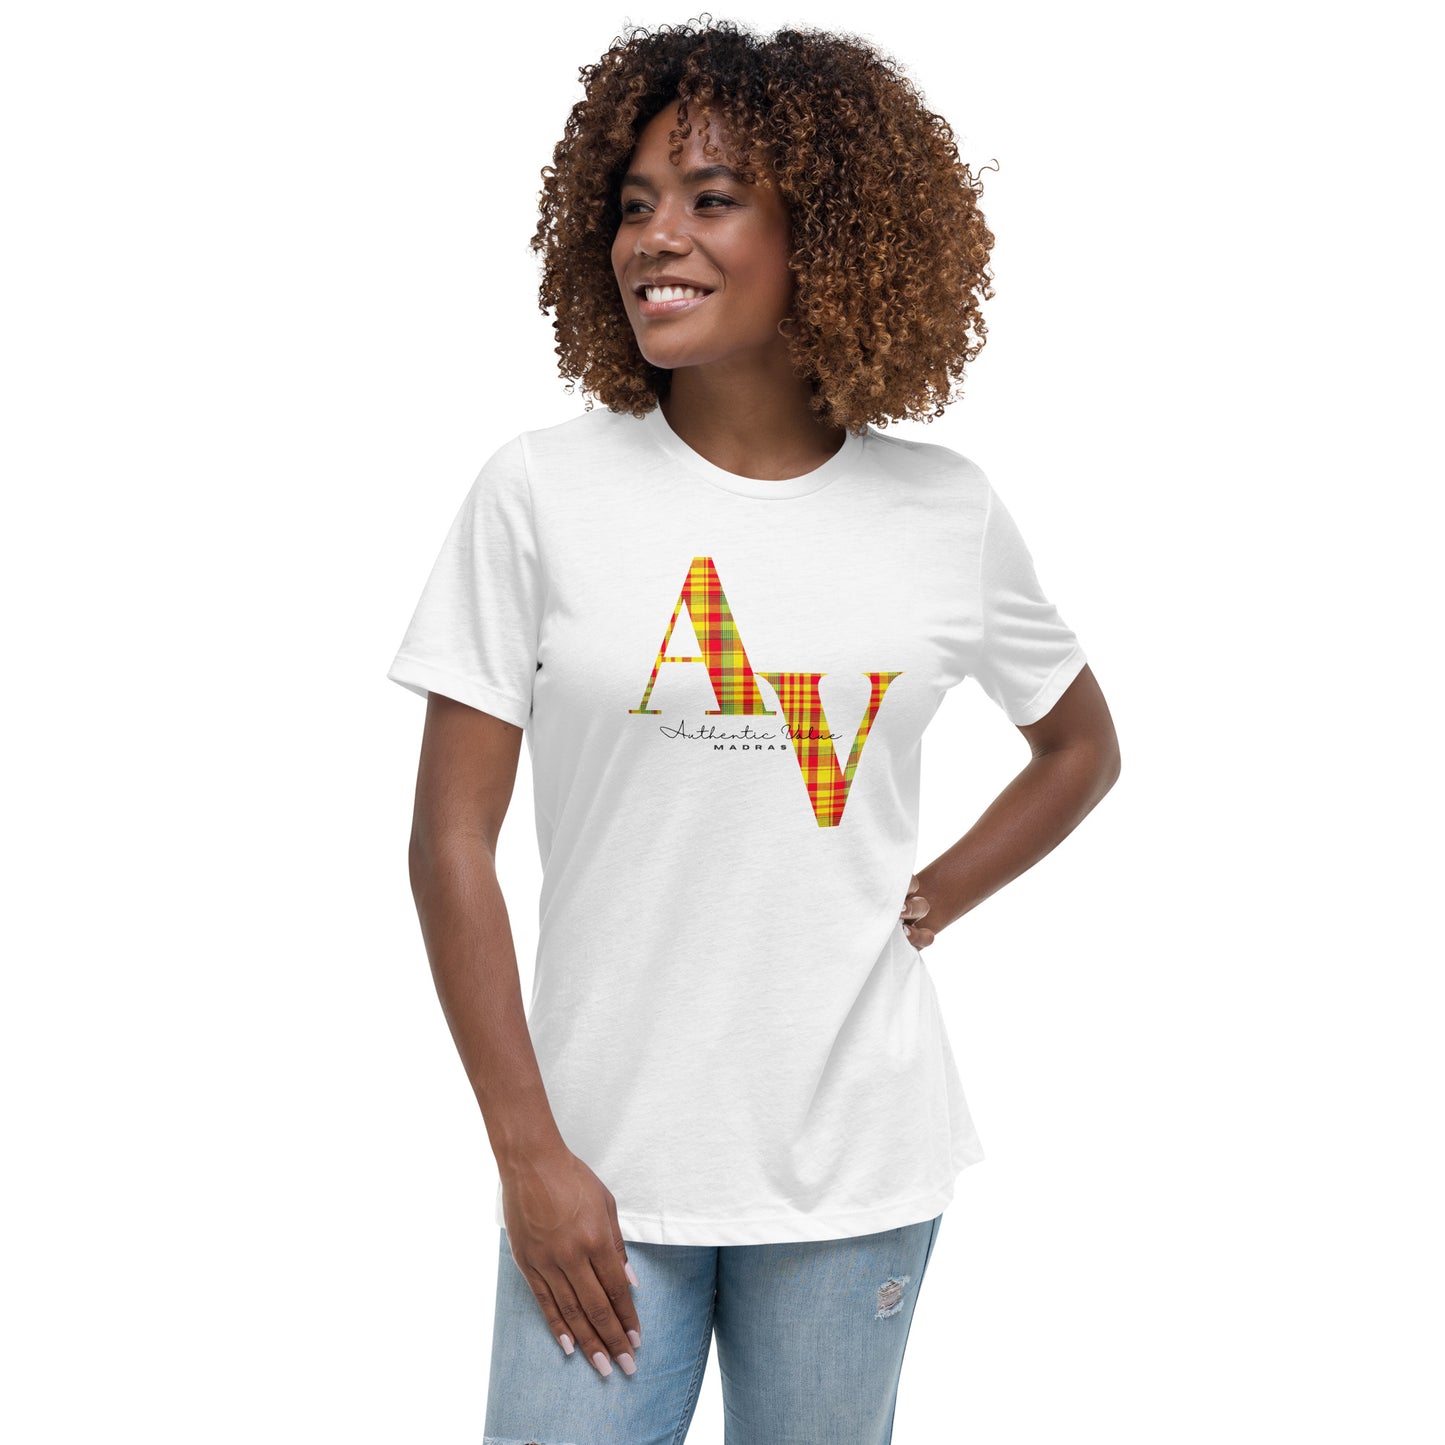 T-shirt Imprimé Madras Femme - Authentic Value - T-shirt Femmes - Guadeloupe - Martinique - Antilles